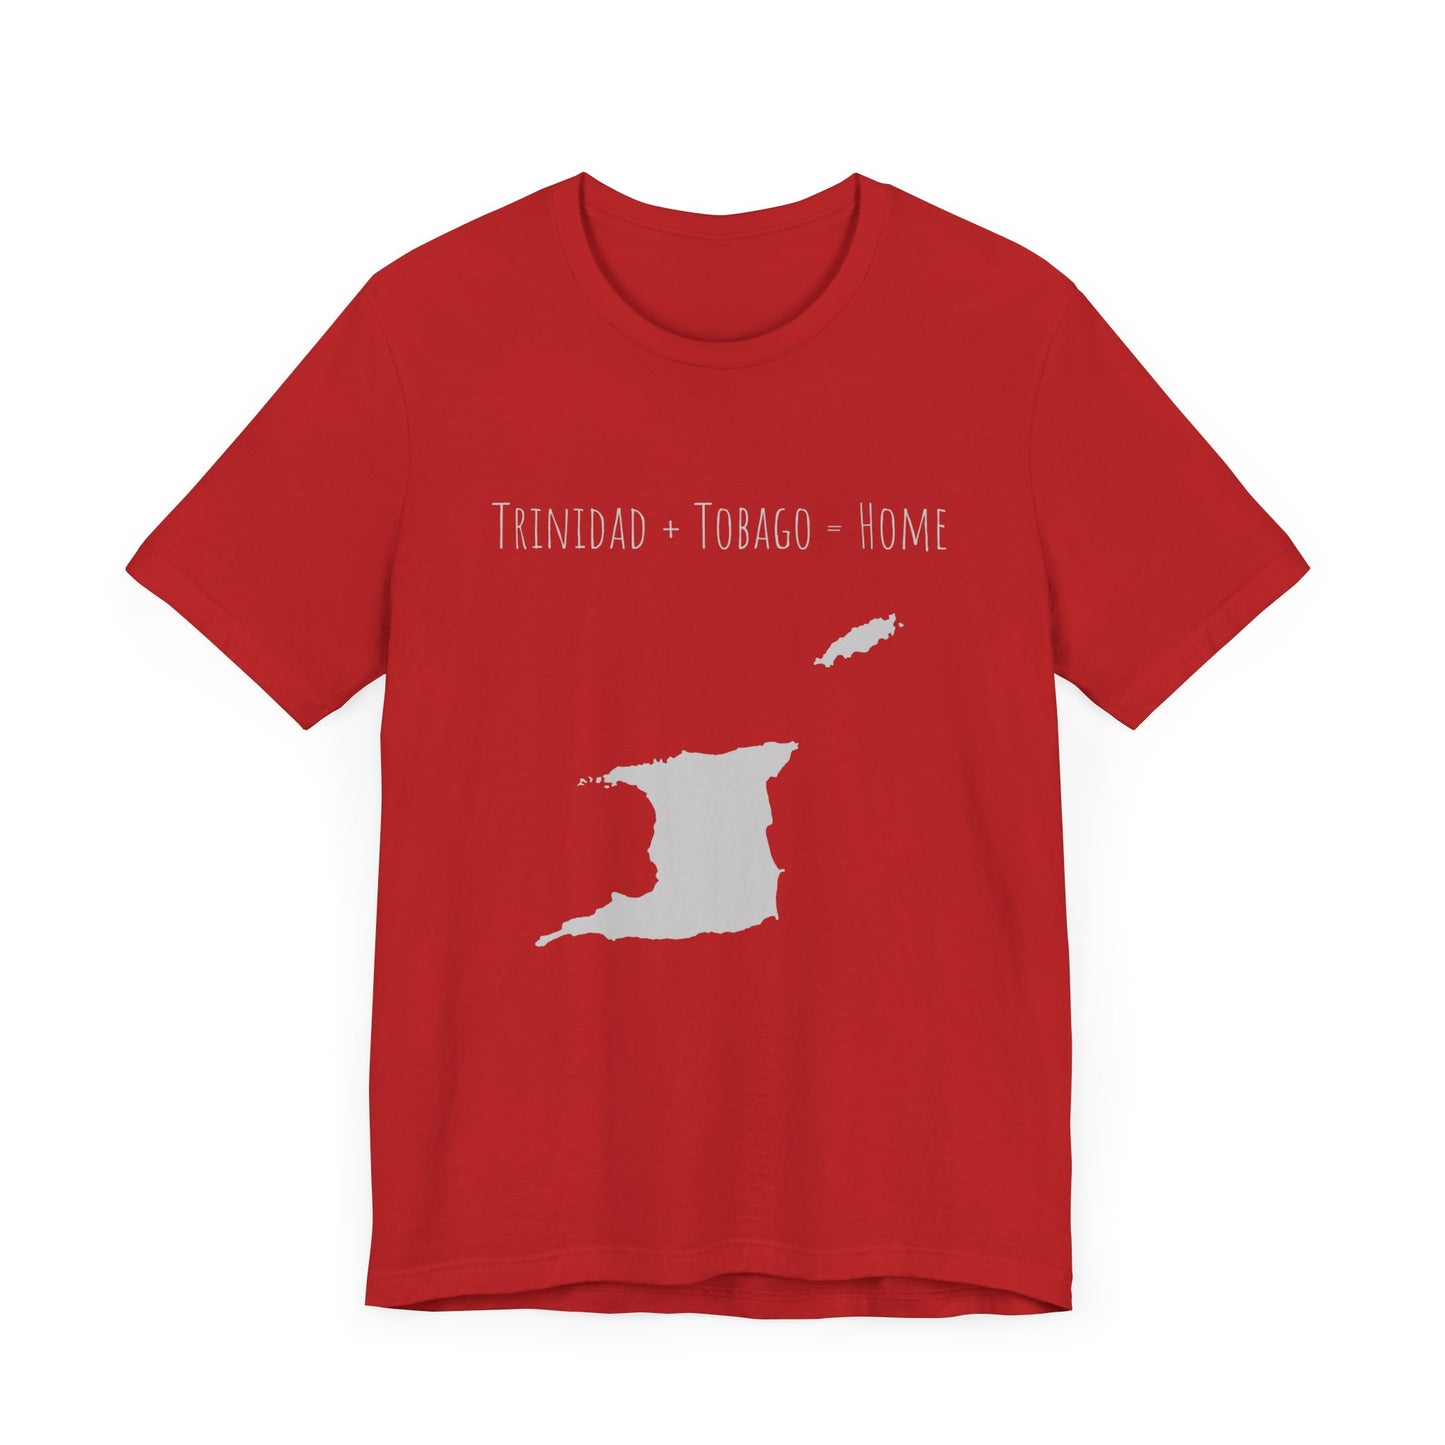 Trinidad + Tobago = Home Tee